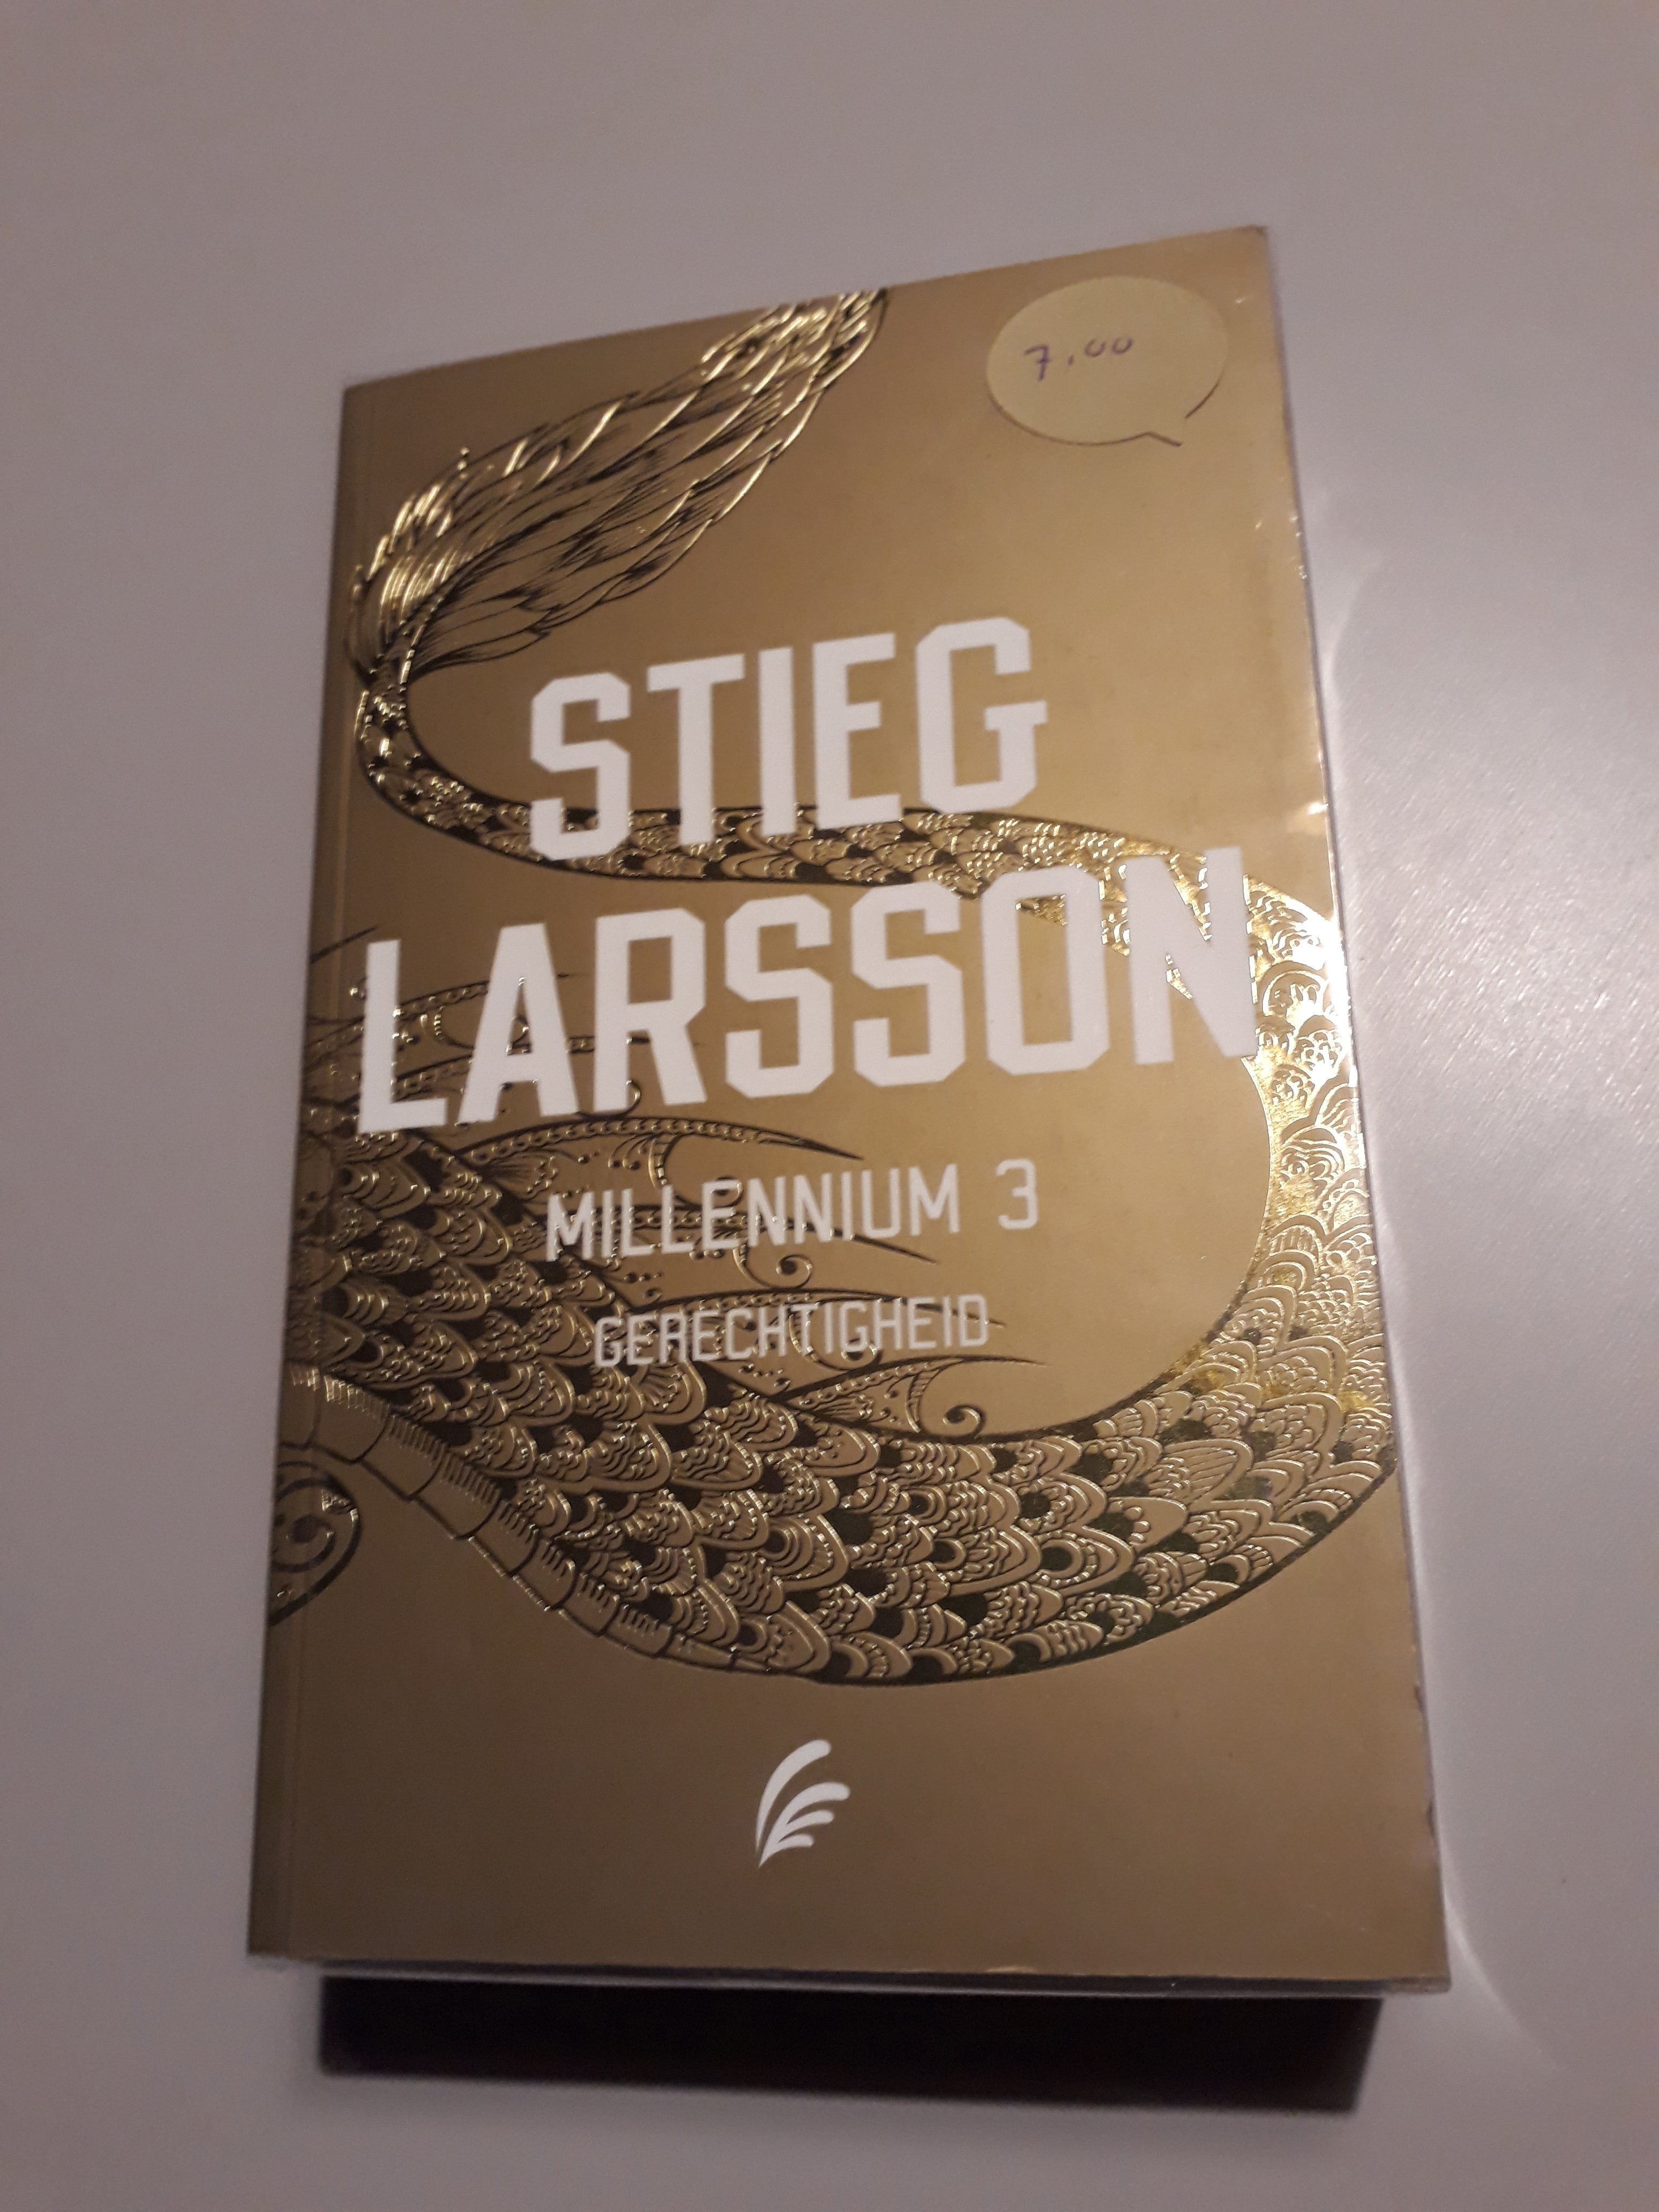 Stieg Larsson - Millennium 3 Gerechtigheid - 2dehands gebruikt